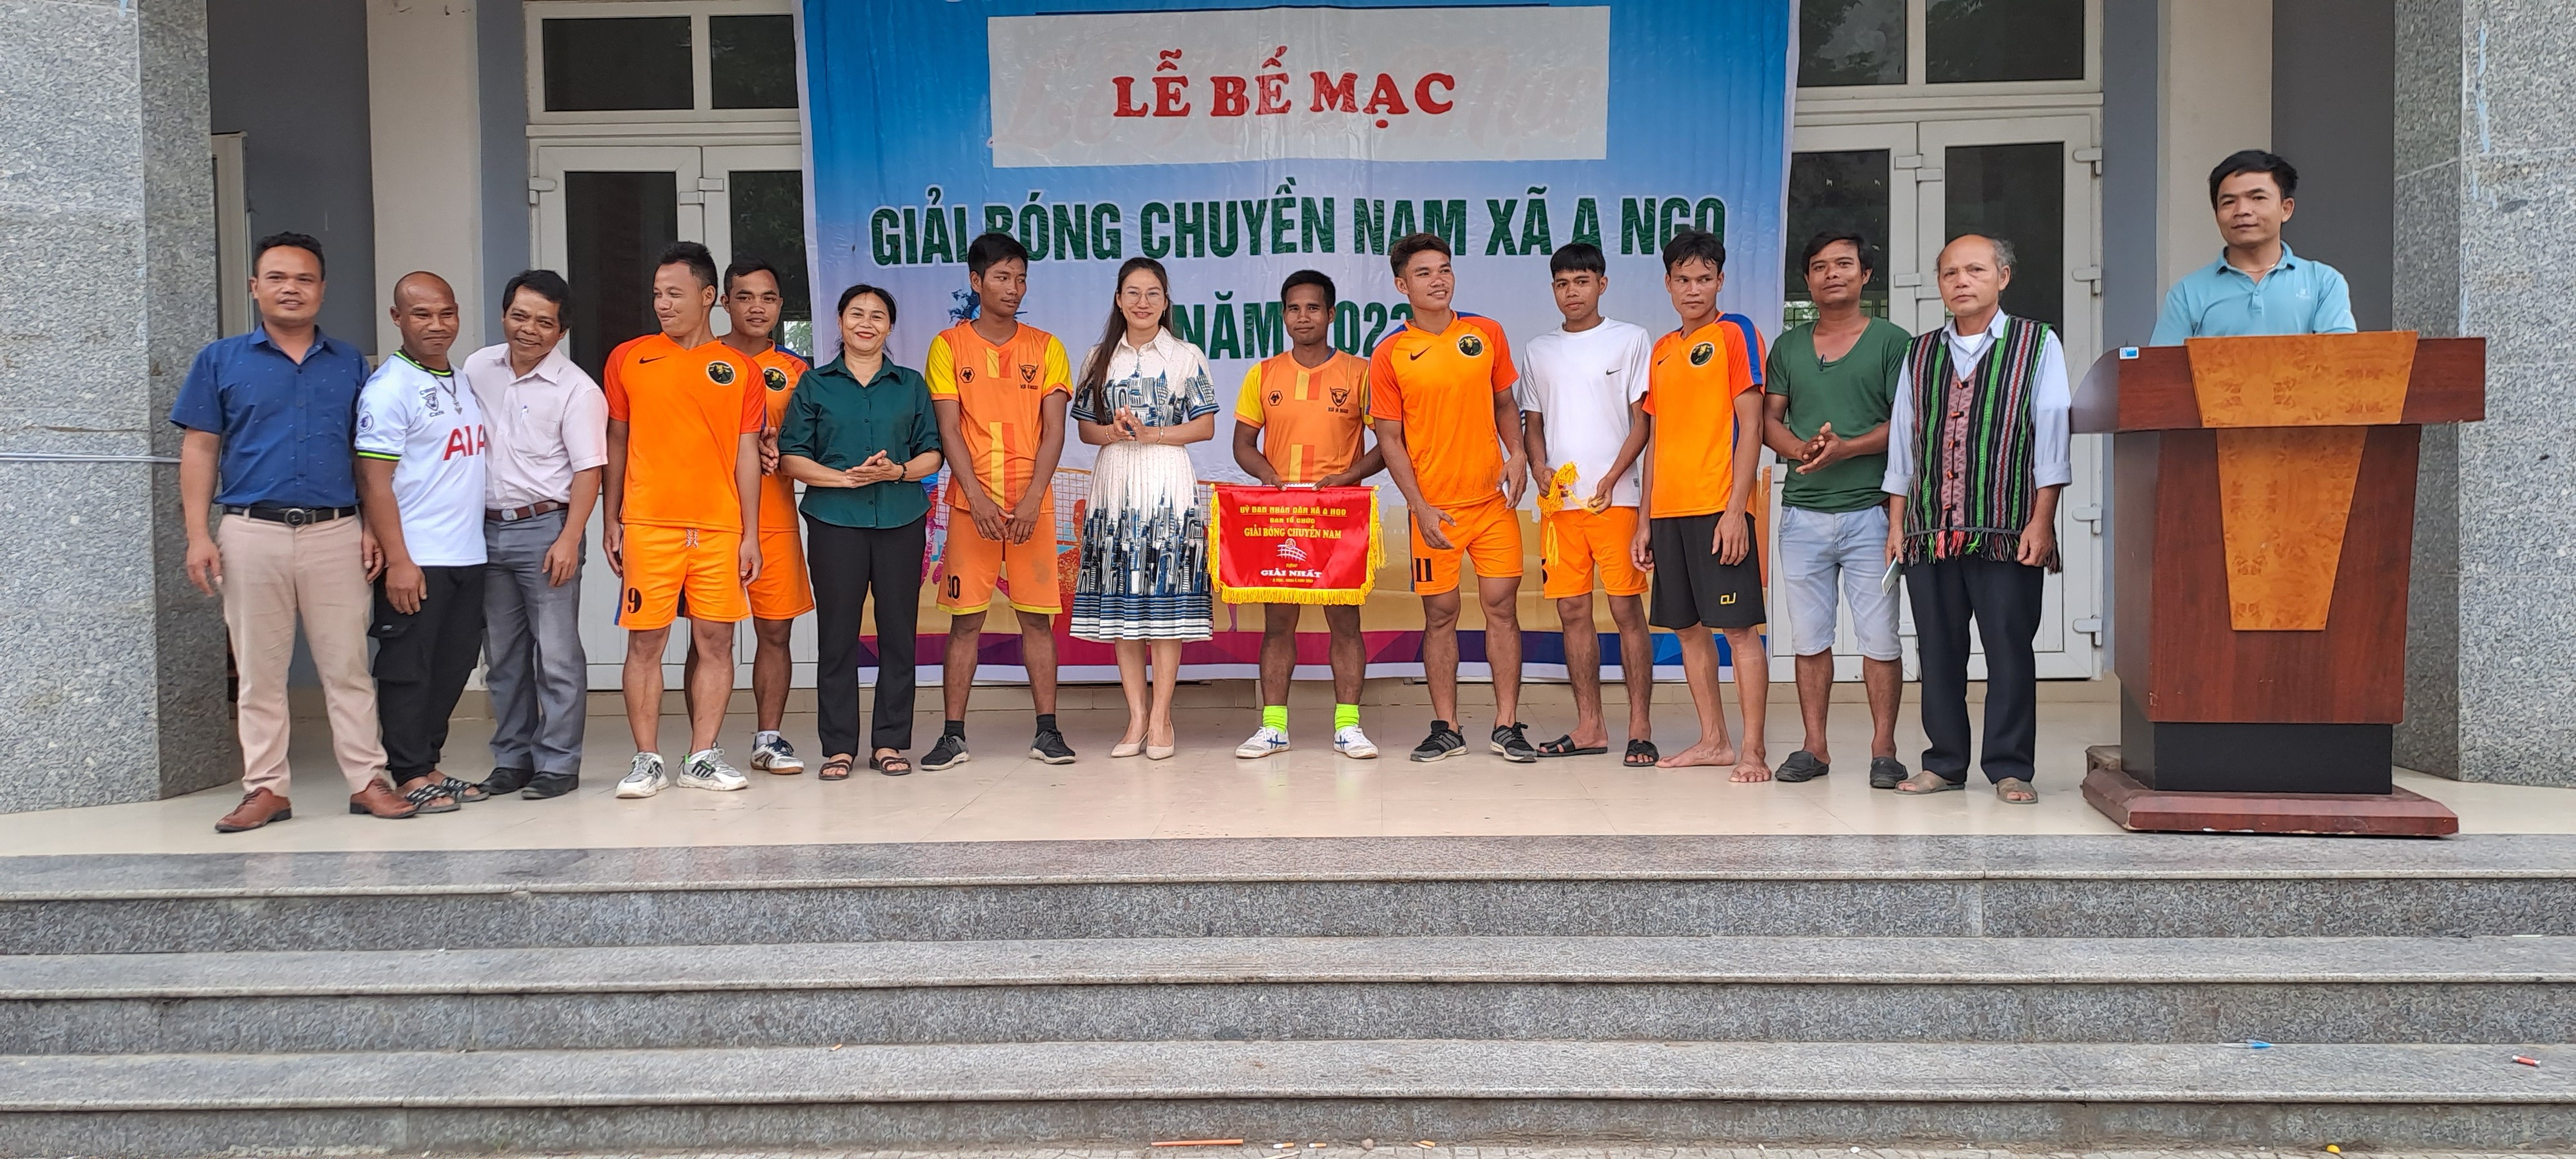 Đồng chí Nguyễn Thị Liễu - Phó Phòng VHTT dự lễ Bế mạc và trao giải cho các thôn